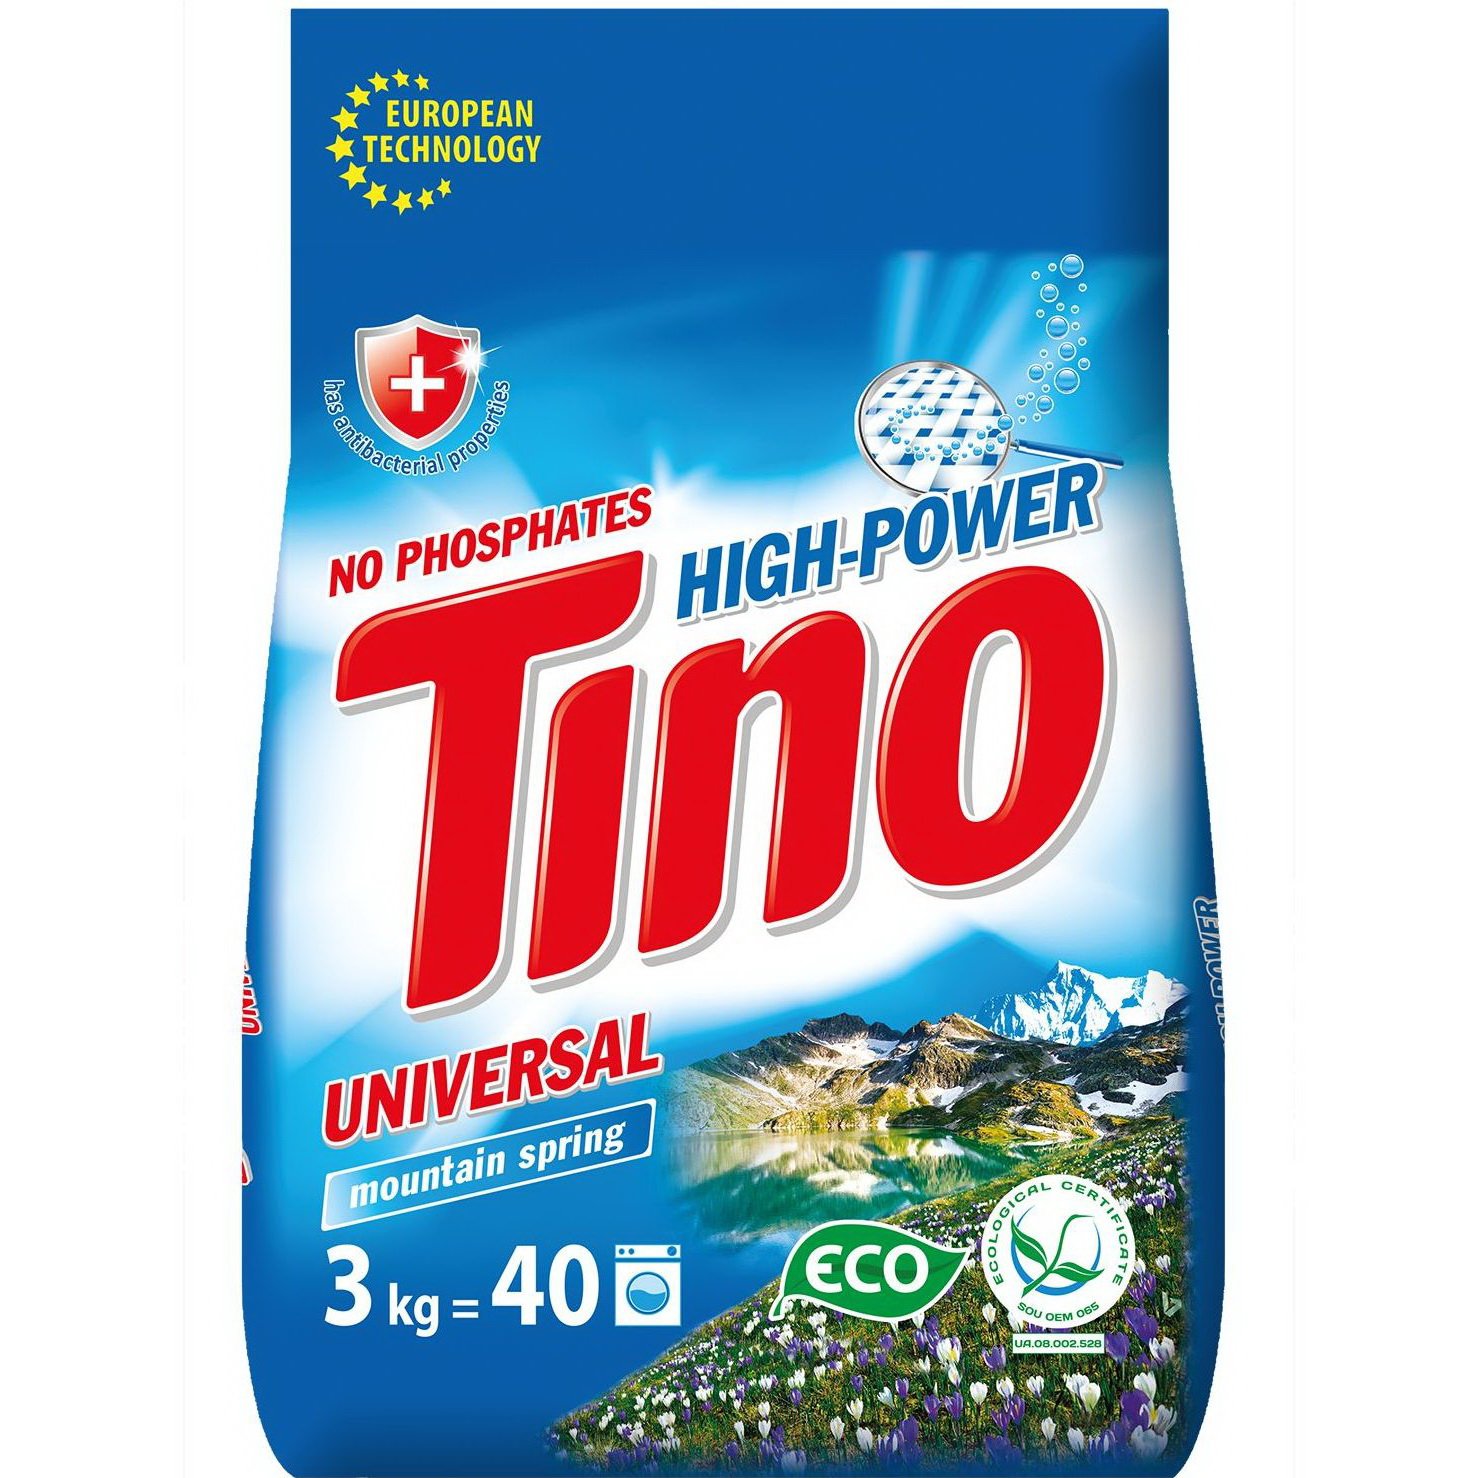 Фото - Стиральный порошок Порошок пральний Tino High-Power Universal Mountain spring, 3 кг